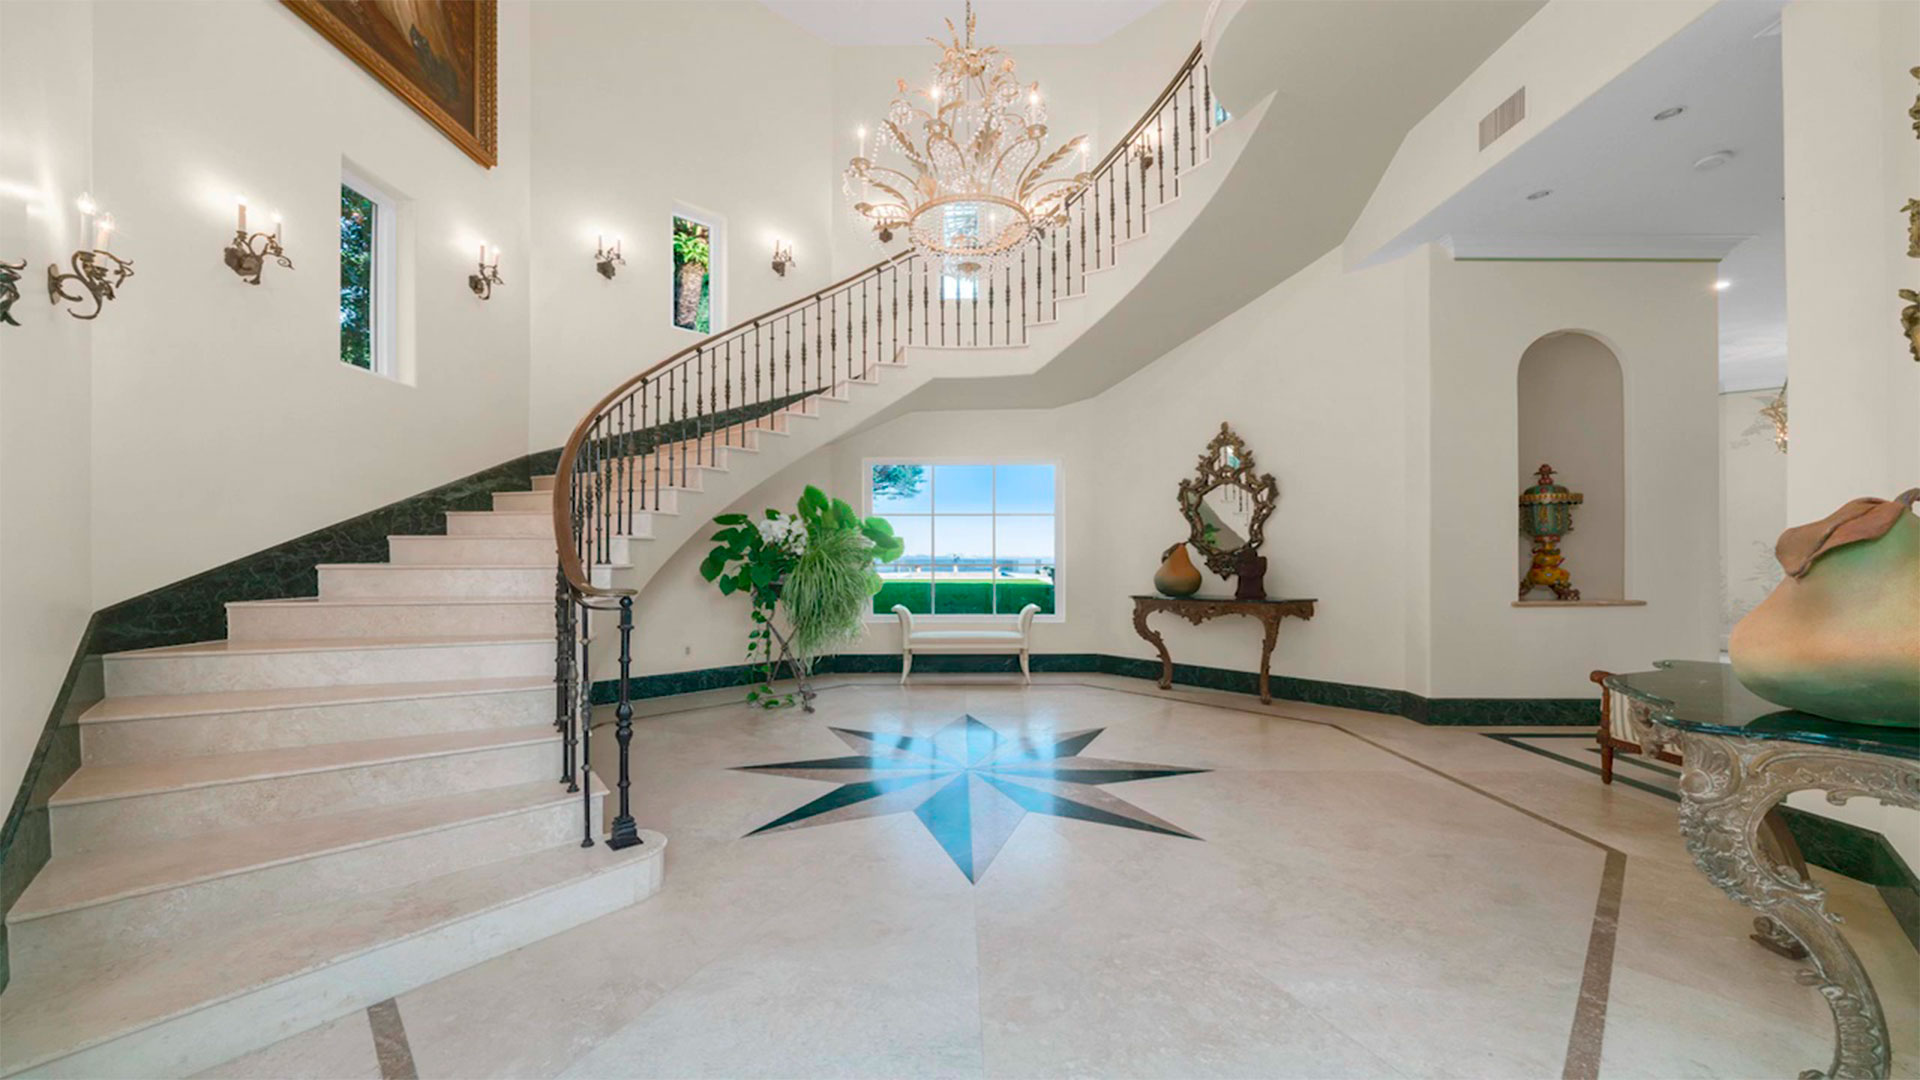 La propiedad consta de dos casas de dos pisos construidas en dos parcelas unidas en una de las zonas más exclusivas de Miami, Coconut Grove